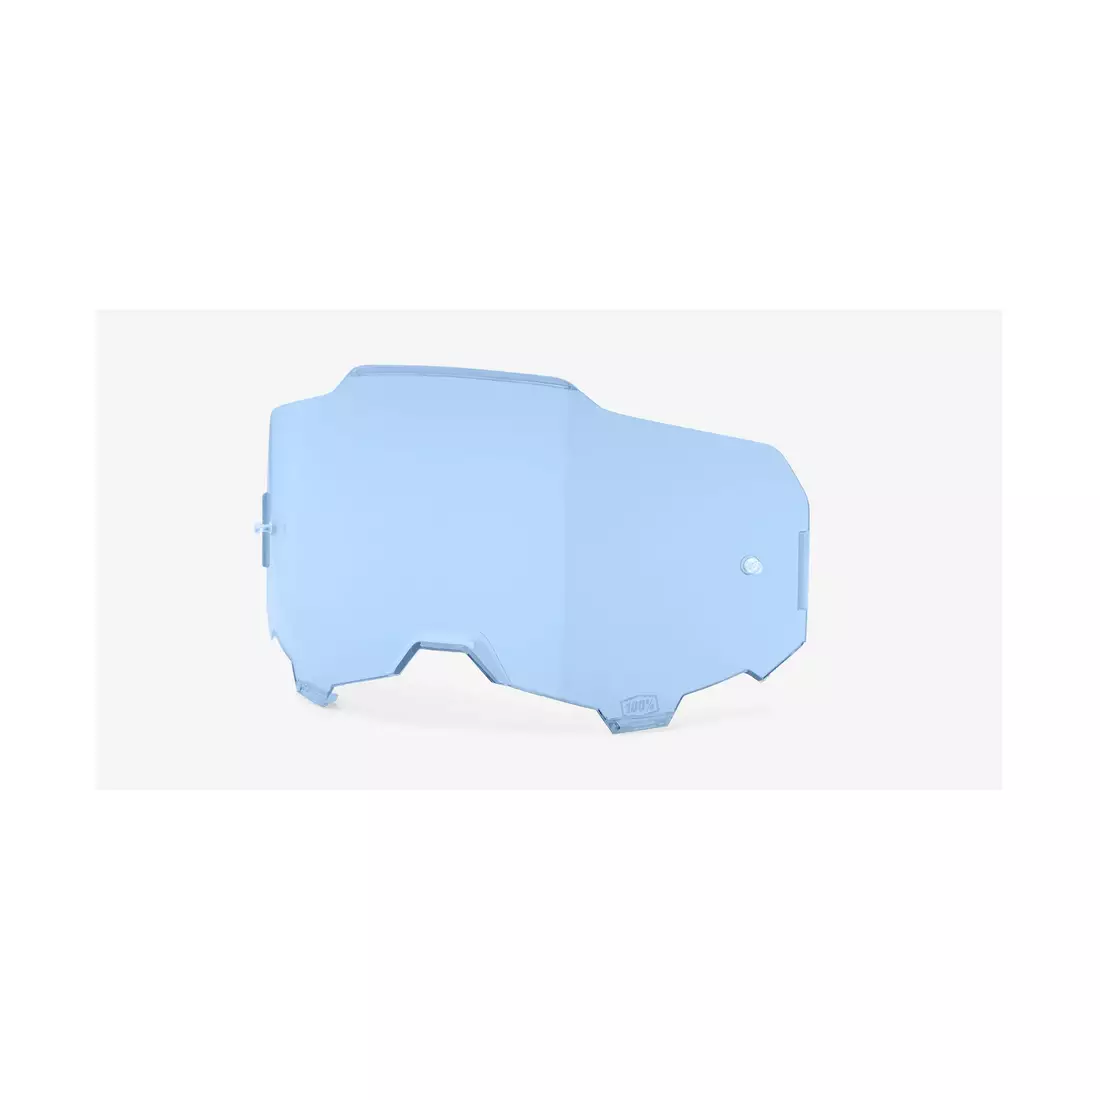 100% vyměnitelná čočka pro brýle ARMEGA (blue) STO-51040-002-02